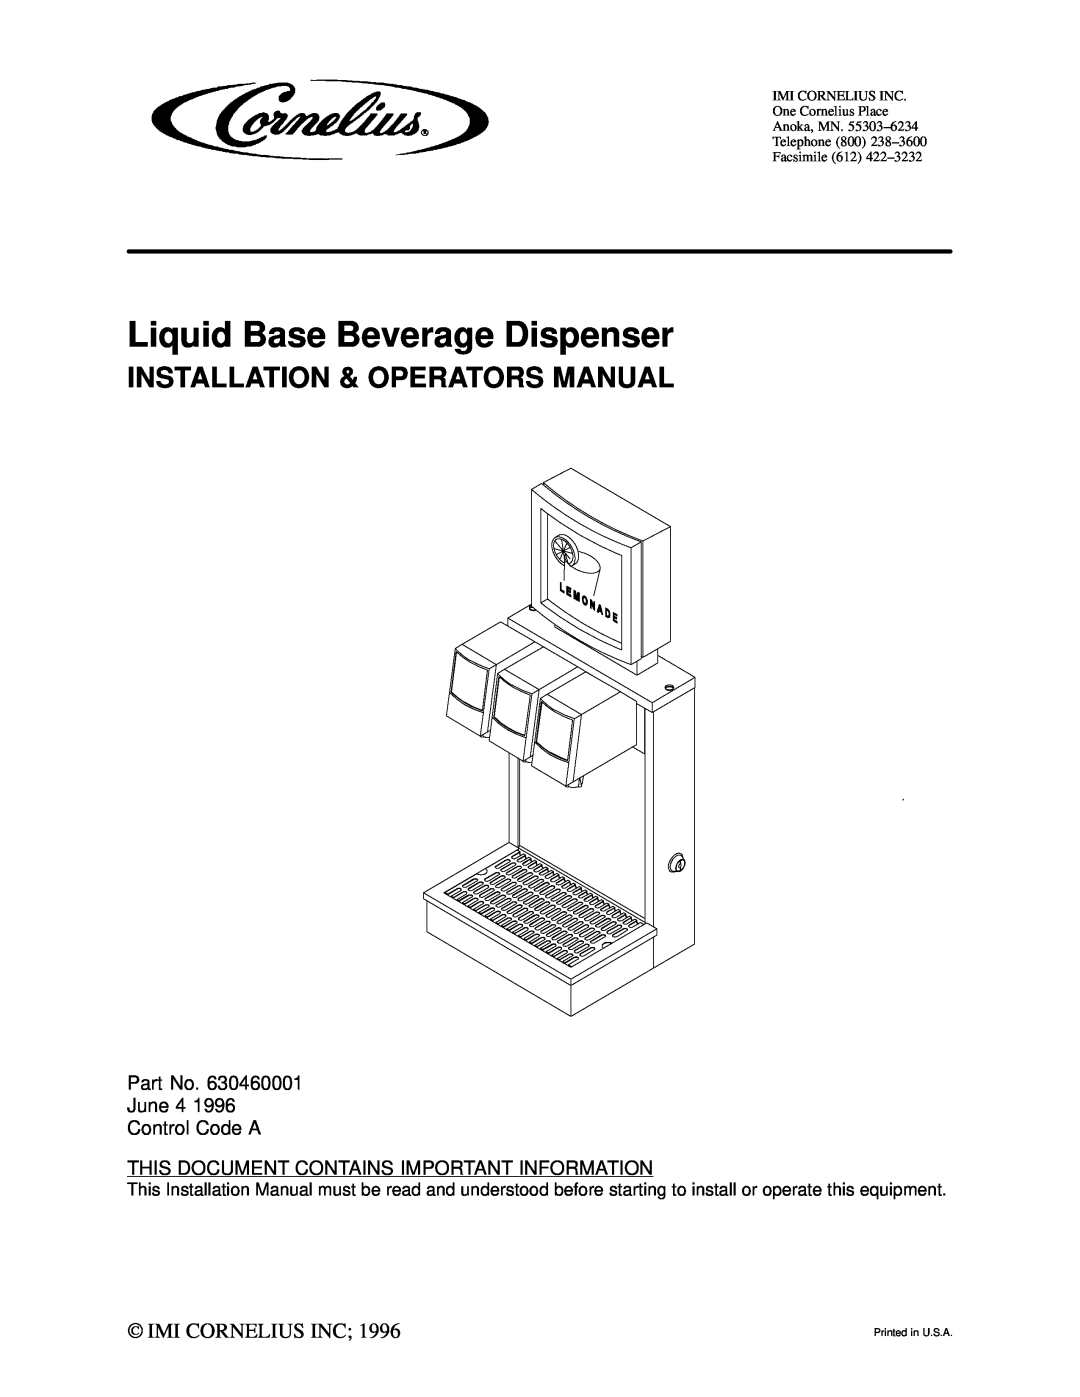 Cornelius Liquid Base Beverage Dispenser installation manual Part No. June 4 Control Code A, Imi Cornelius Inc 